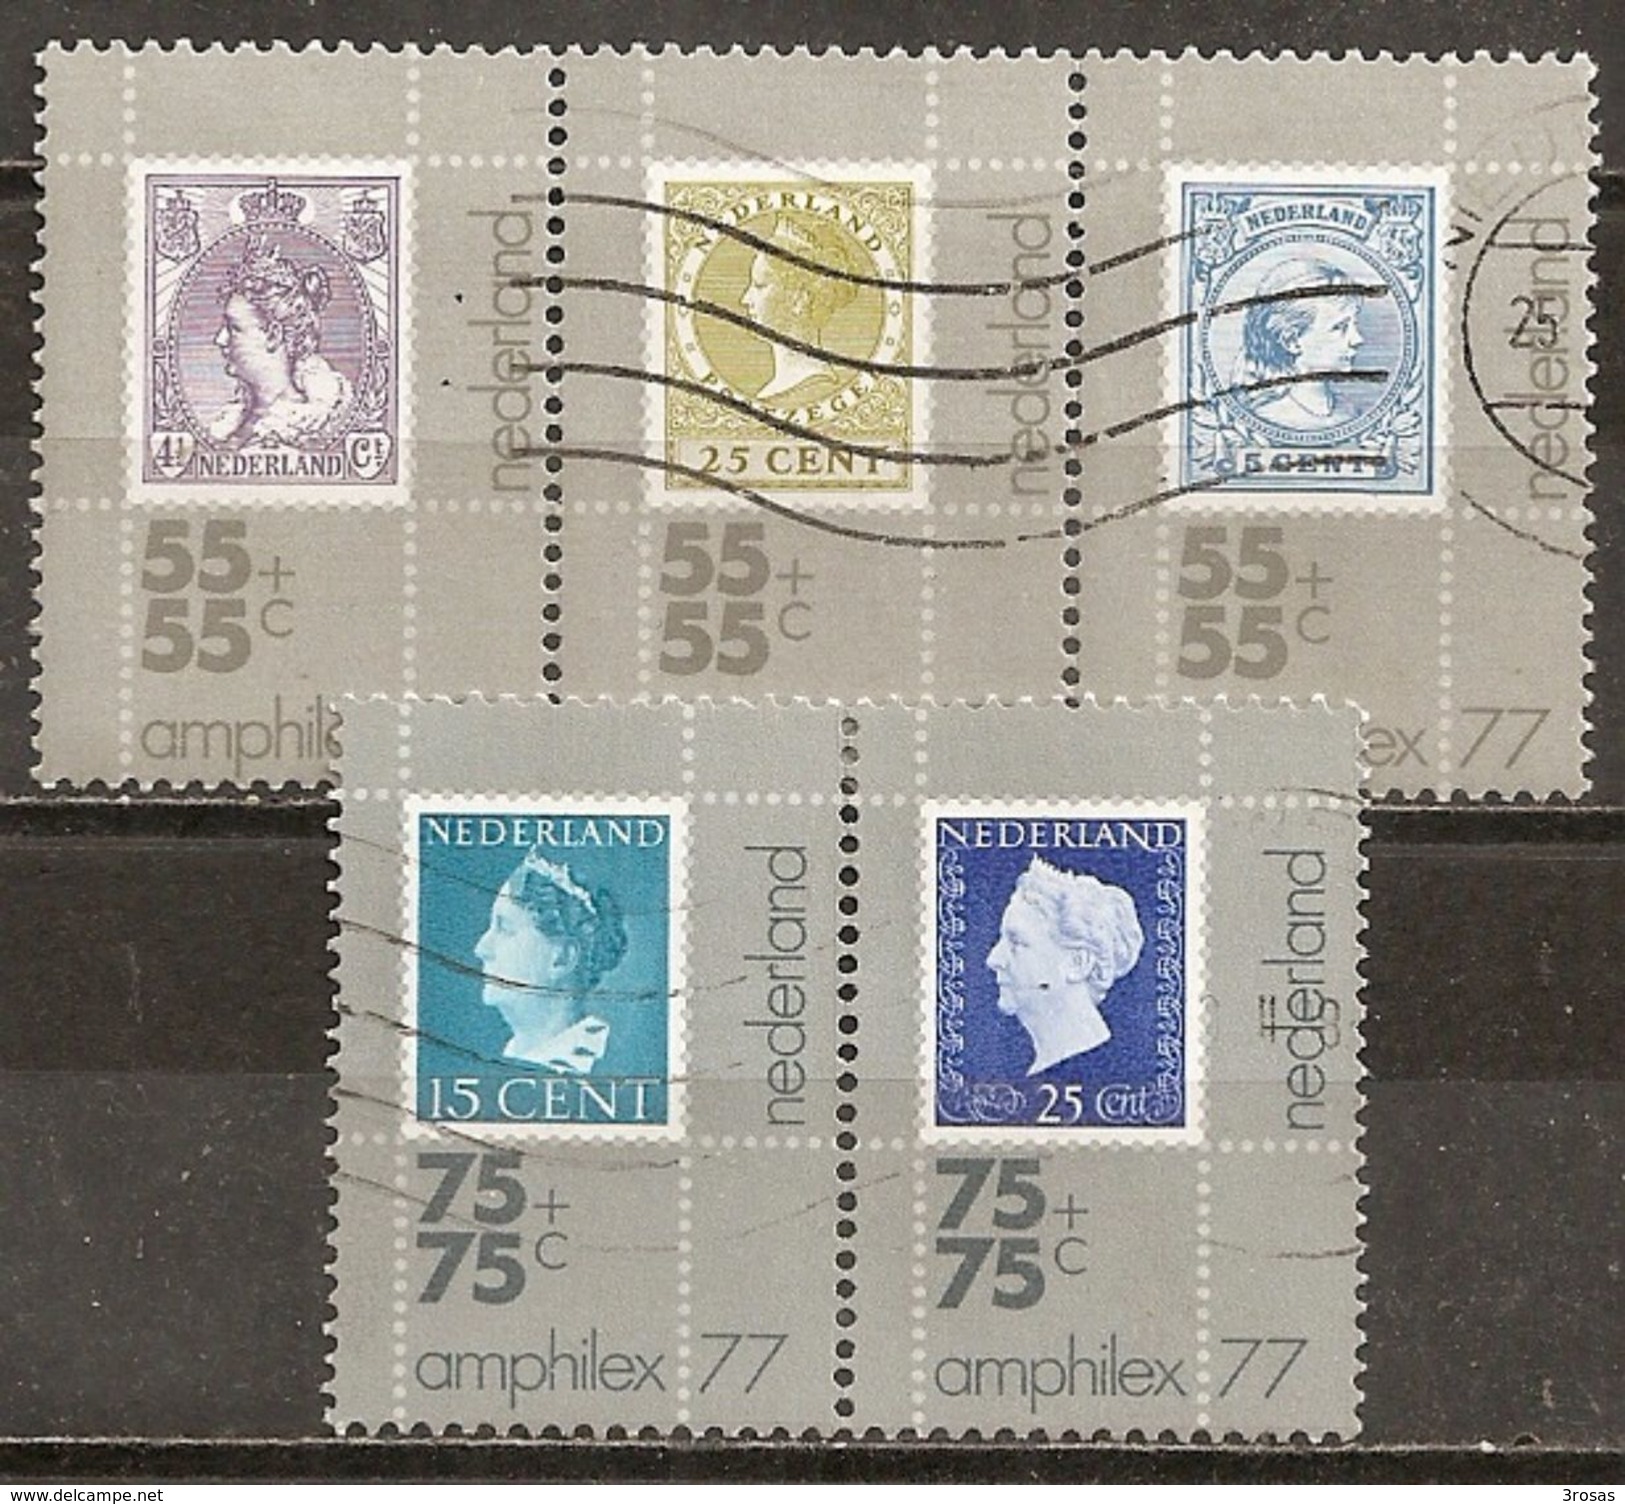 Pays-Bas Netherlands 1976 Exhibition Philatelique Amphilex Timbre Sur Timbre Complete Set Obl - Used Stamps